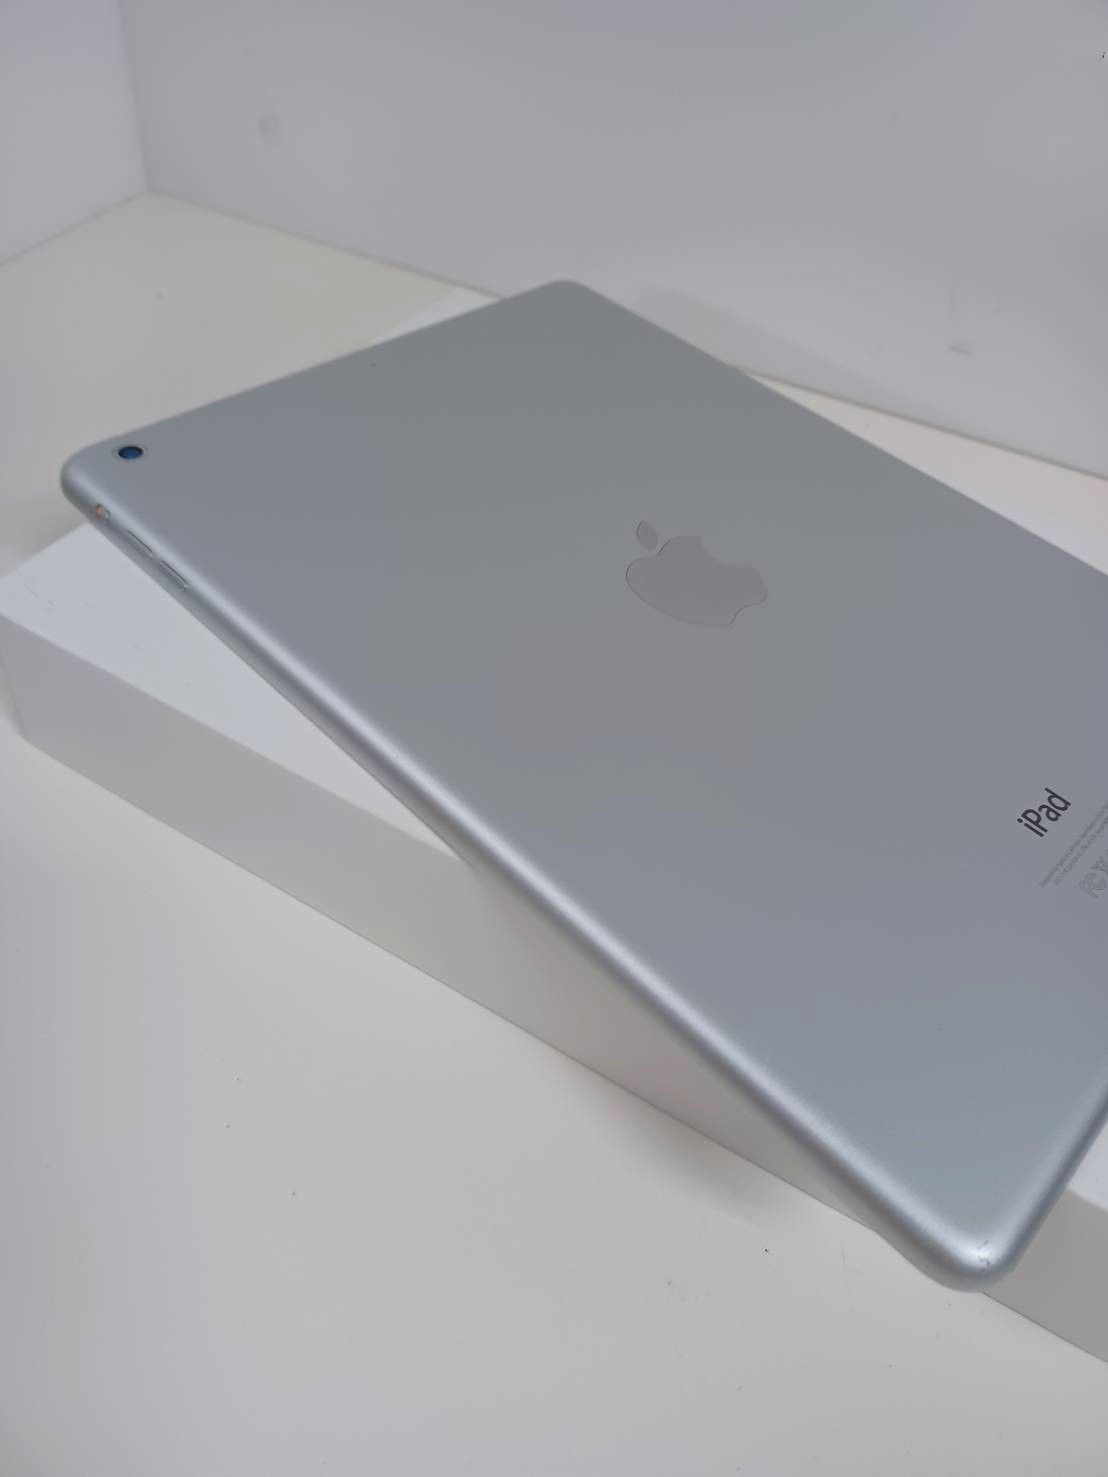 Wi-Fiモデル】iPad Air 第1世代 FD789J/A (A1474) 32GB - 中古パソコン